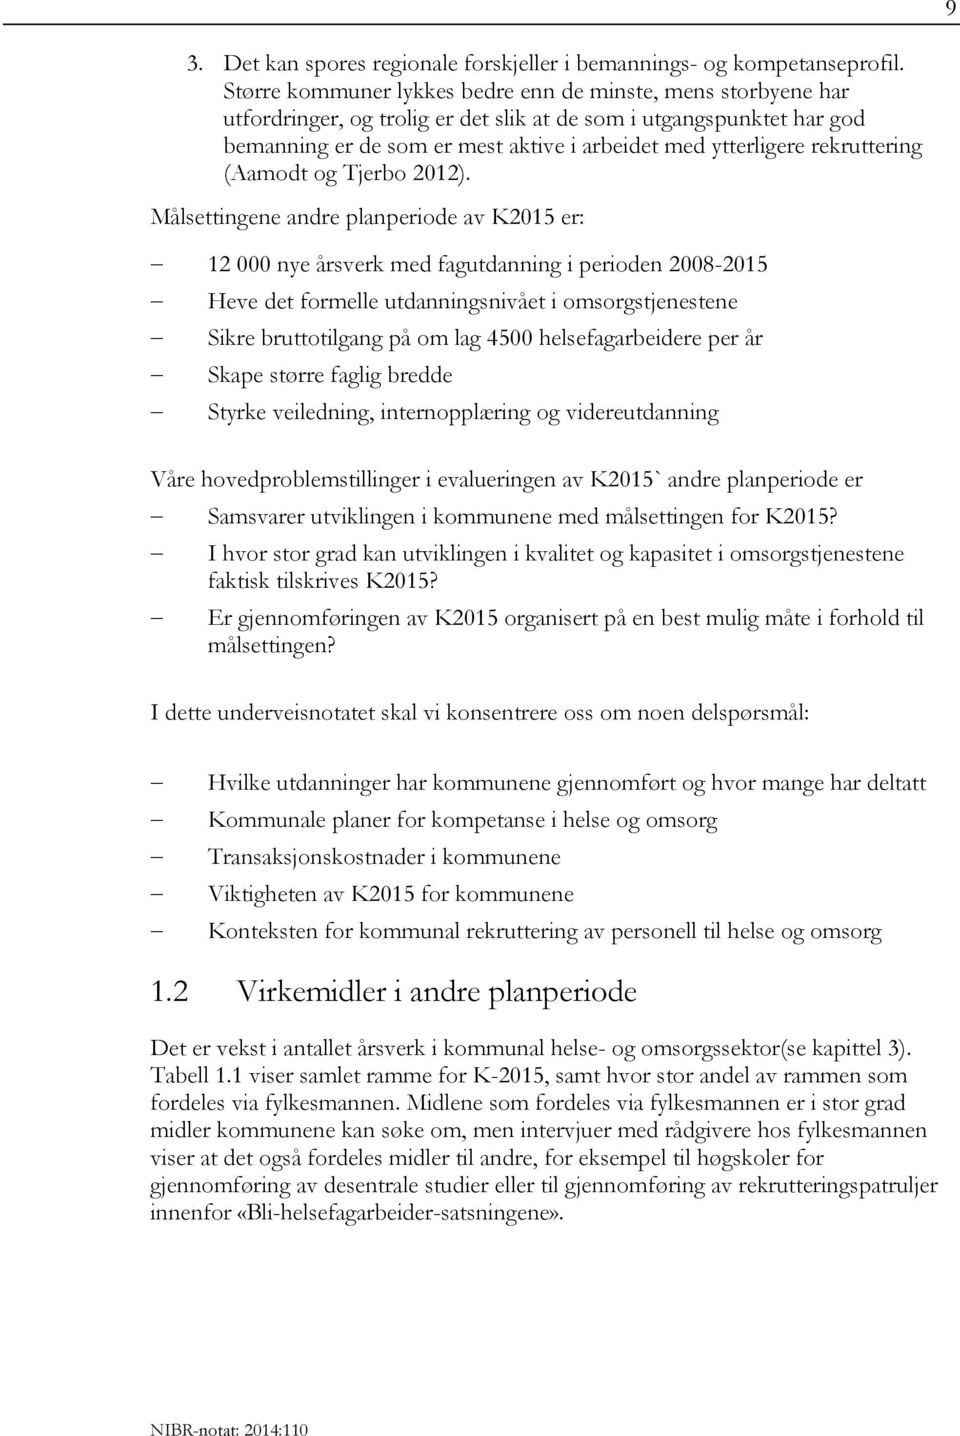 rekruttering (Aamodt og Tjerbo 2012).